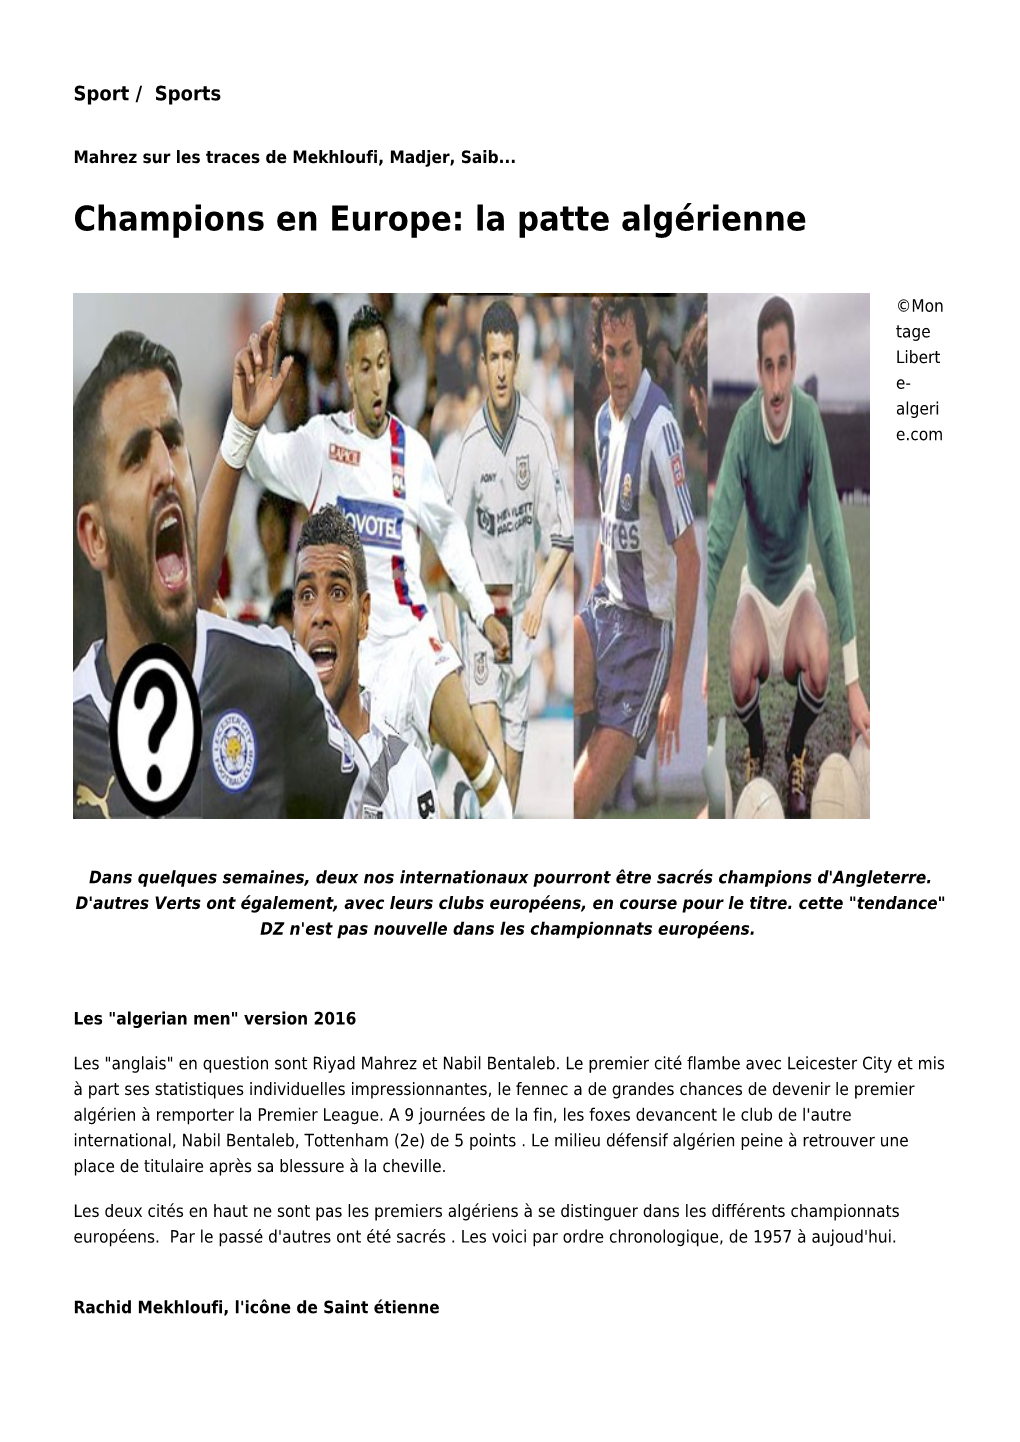 Champions En Europe: La Patte Algérienne